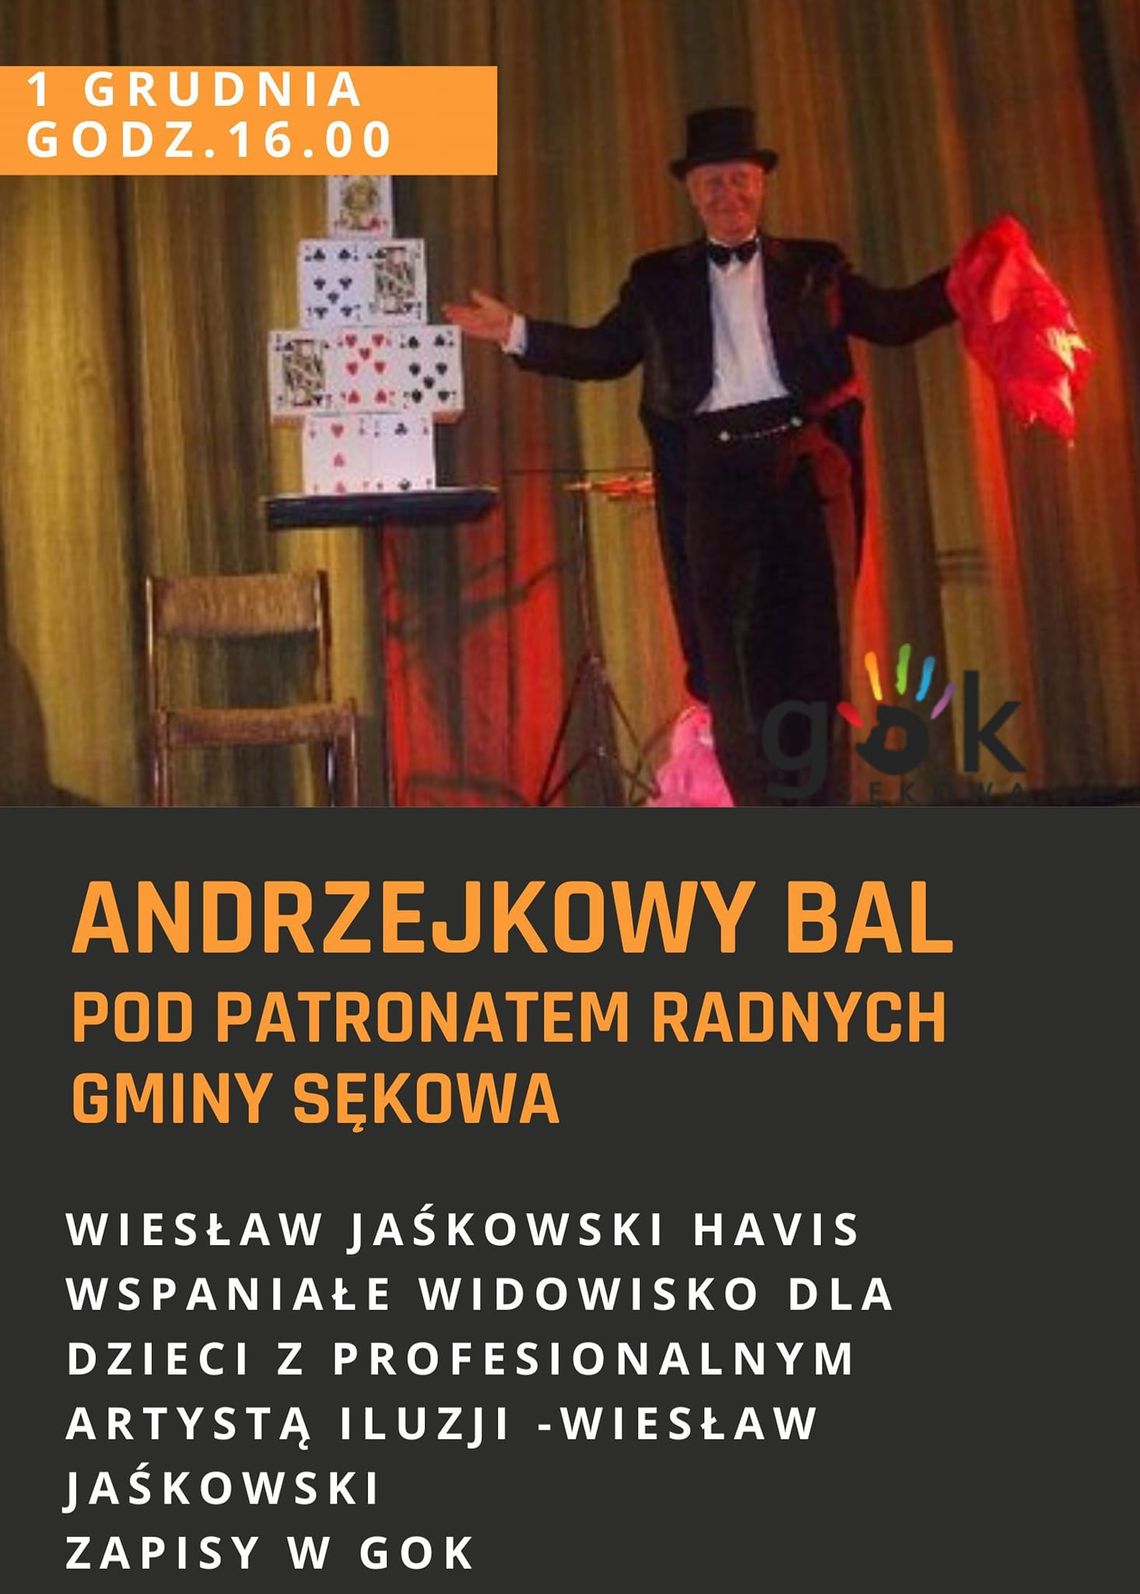 Bal Andrzejkowy pod patronatem Radnych Gminy Sękowa | halogorlice.info